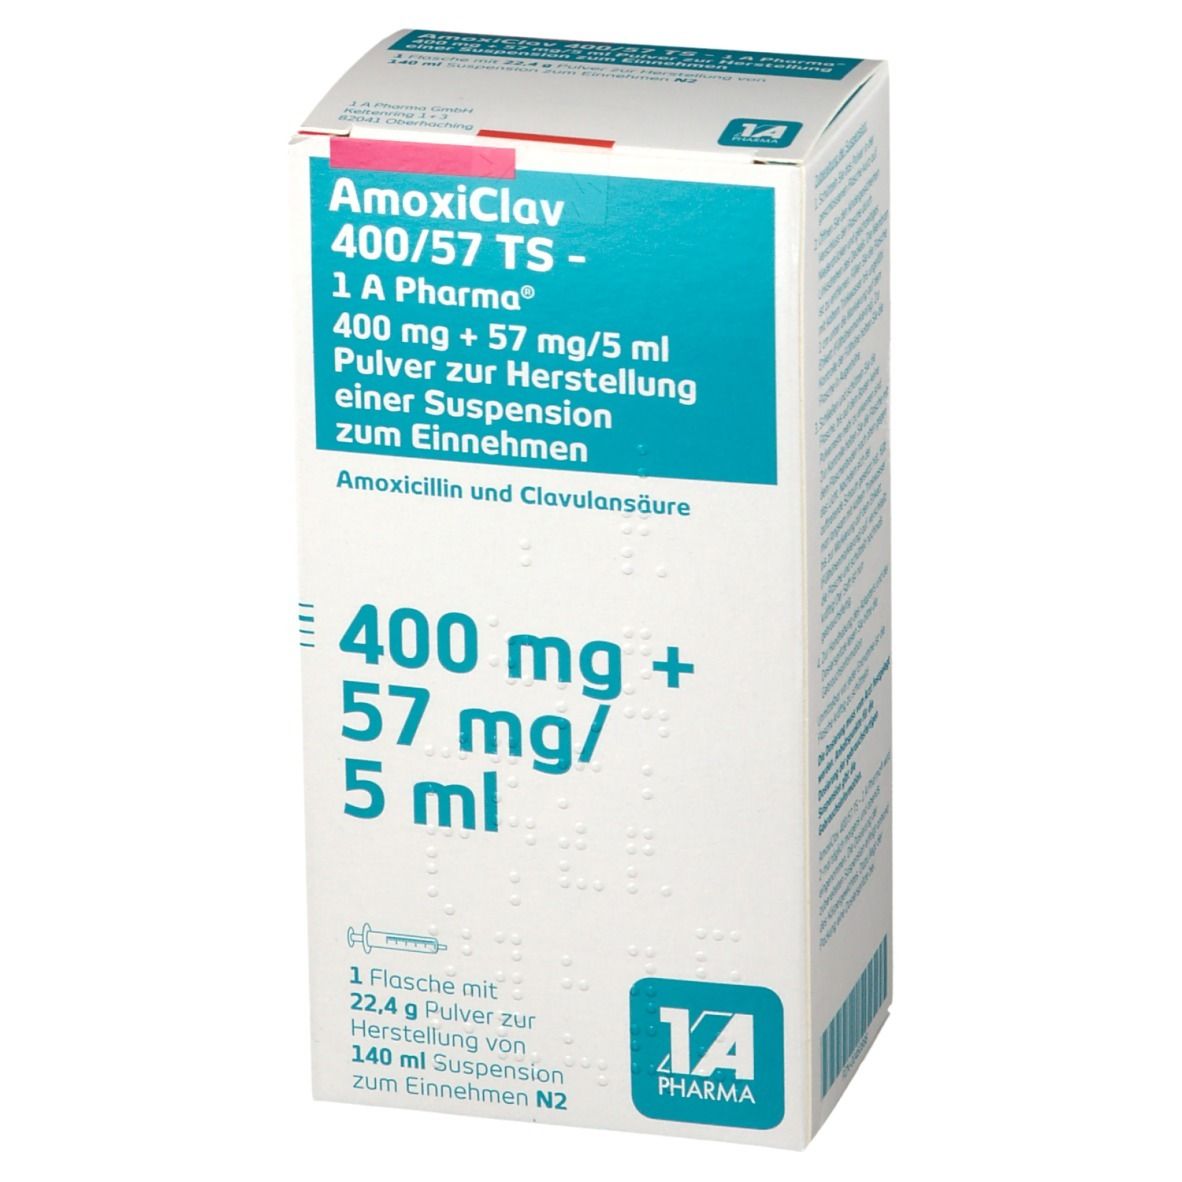 AmoxiClav 400/57 TS - 1 A Pharma®